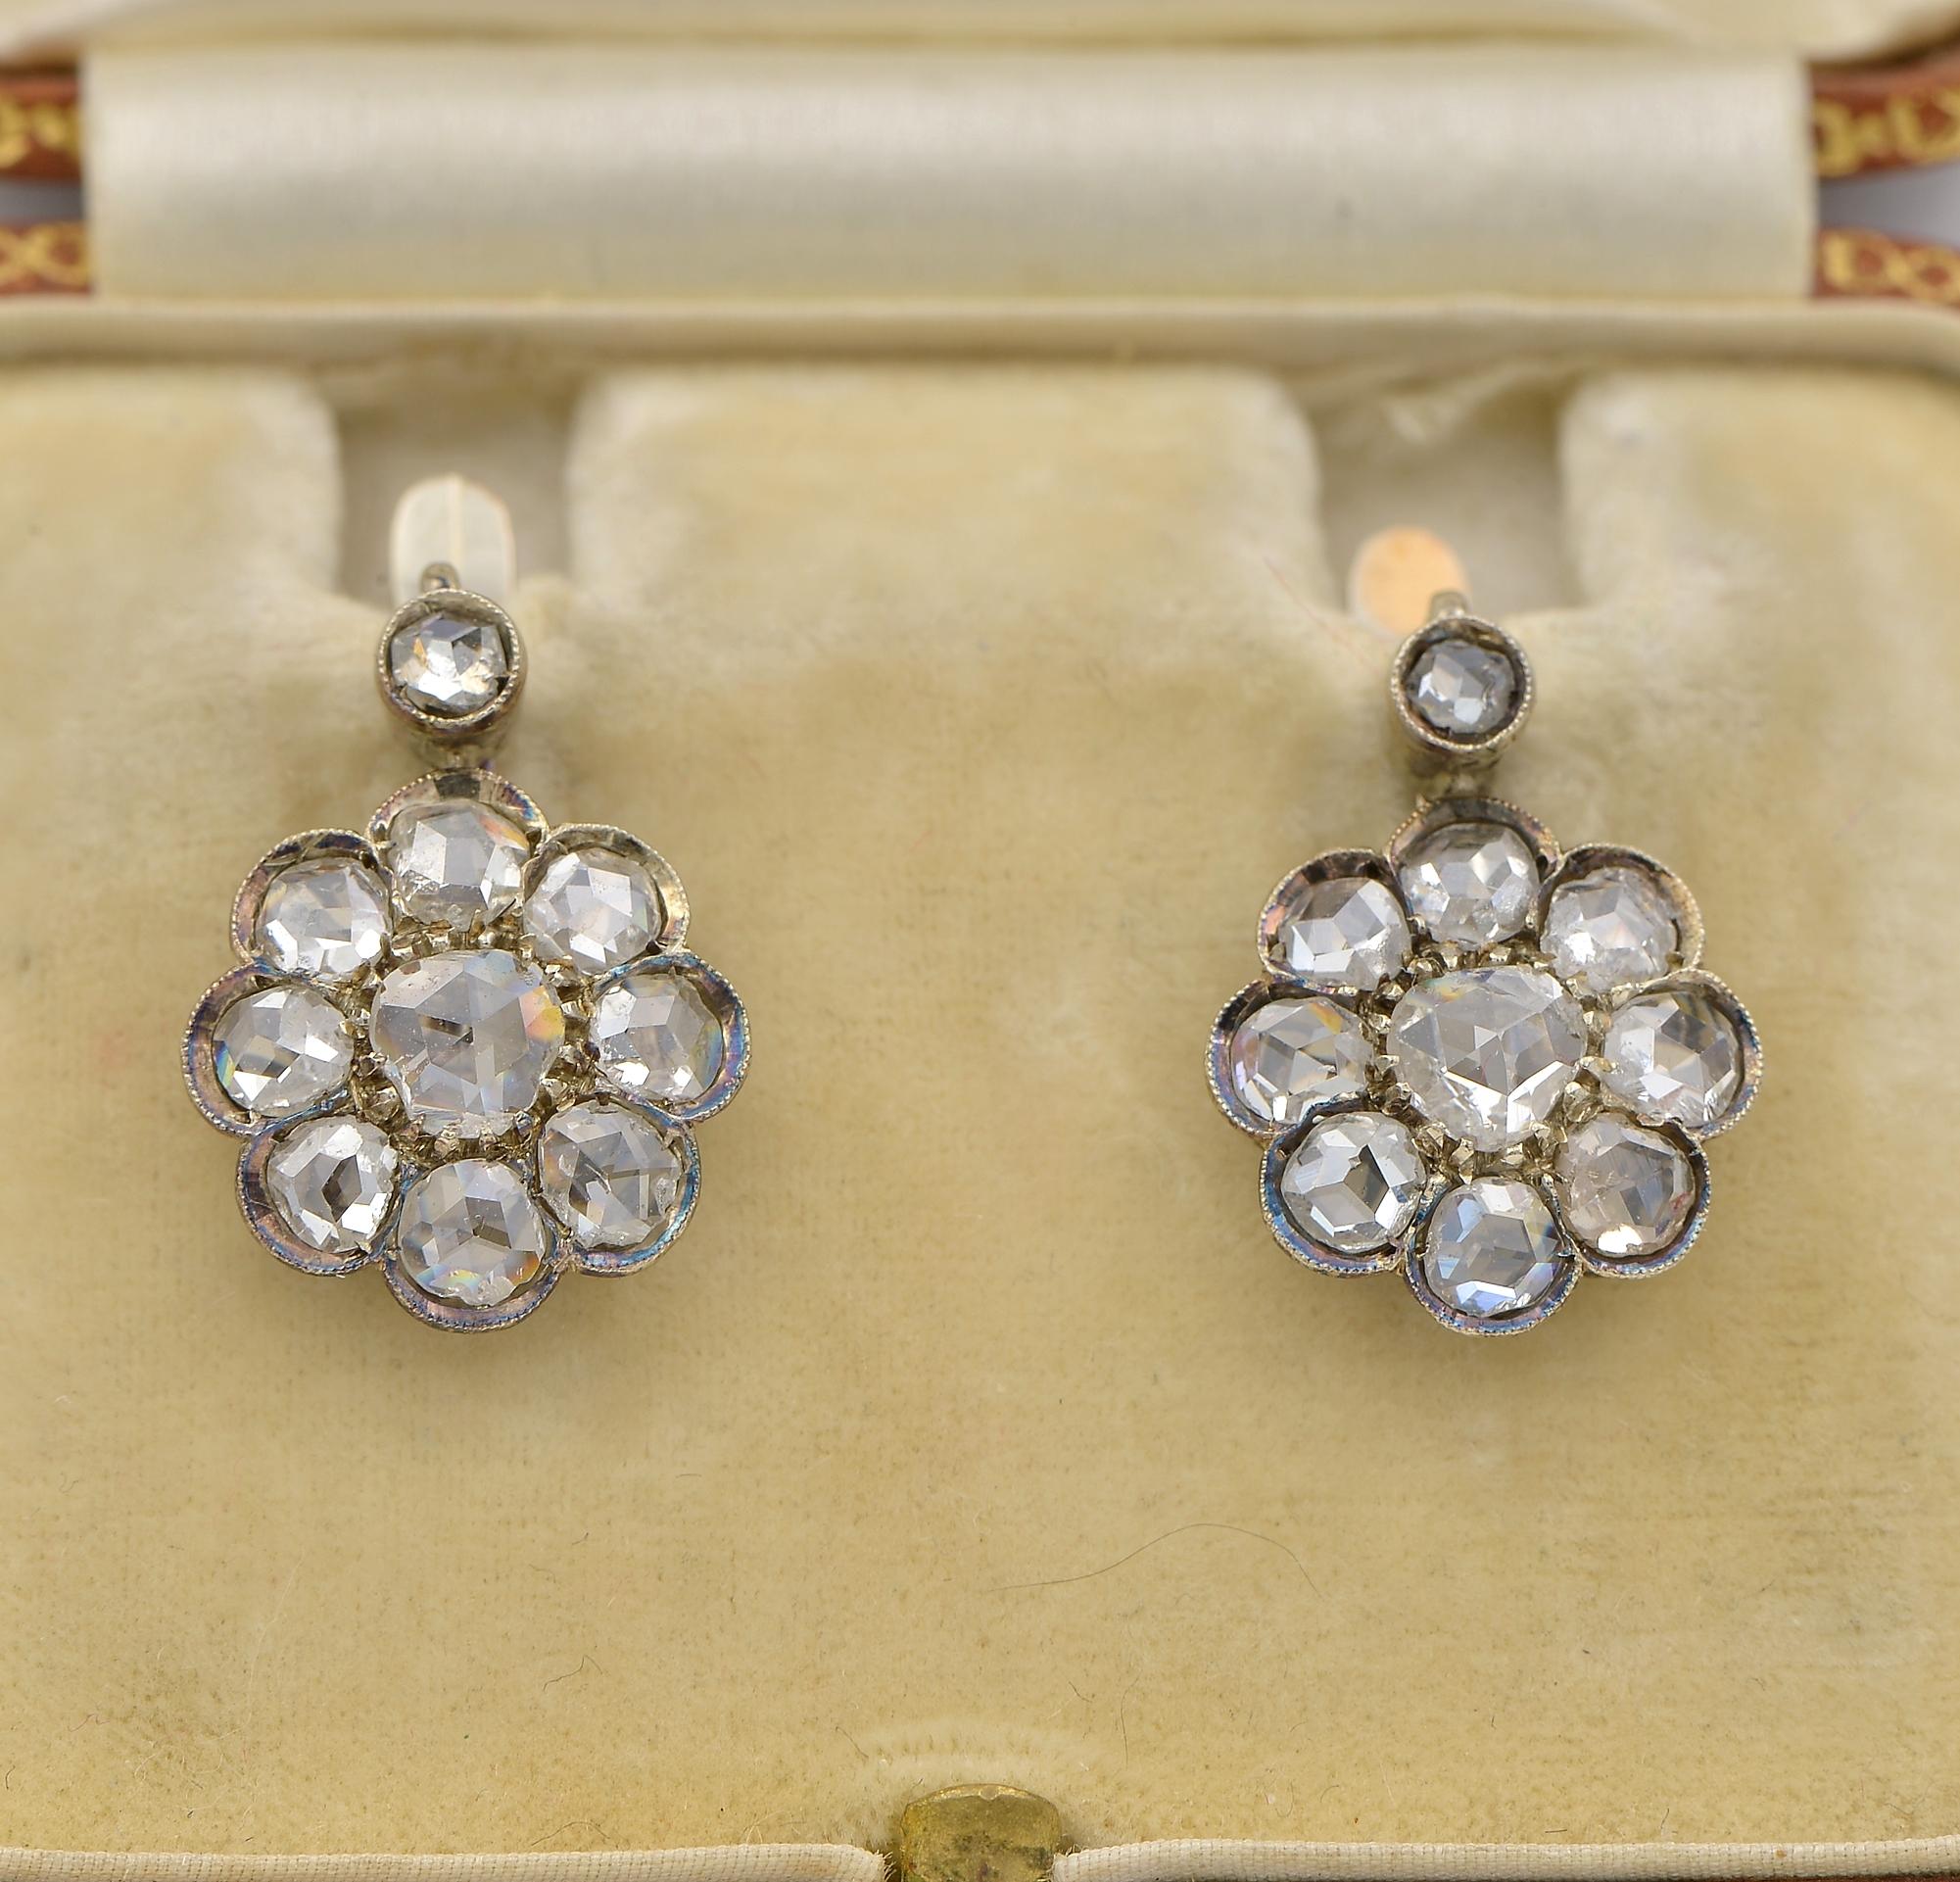 Klassisches Paar viktorianischer Diamant-Tropfenohrringe aus 12 KT Gold
Wunderschöne Größe mit hübschem Schwung durch das damals in Mode gekommene Tropfenmuster
Sie funkeln und ziehen die Aufmerksamkeit auf den geschmackvollen Florettstiel mit einem